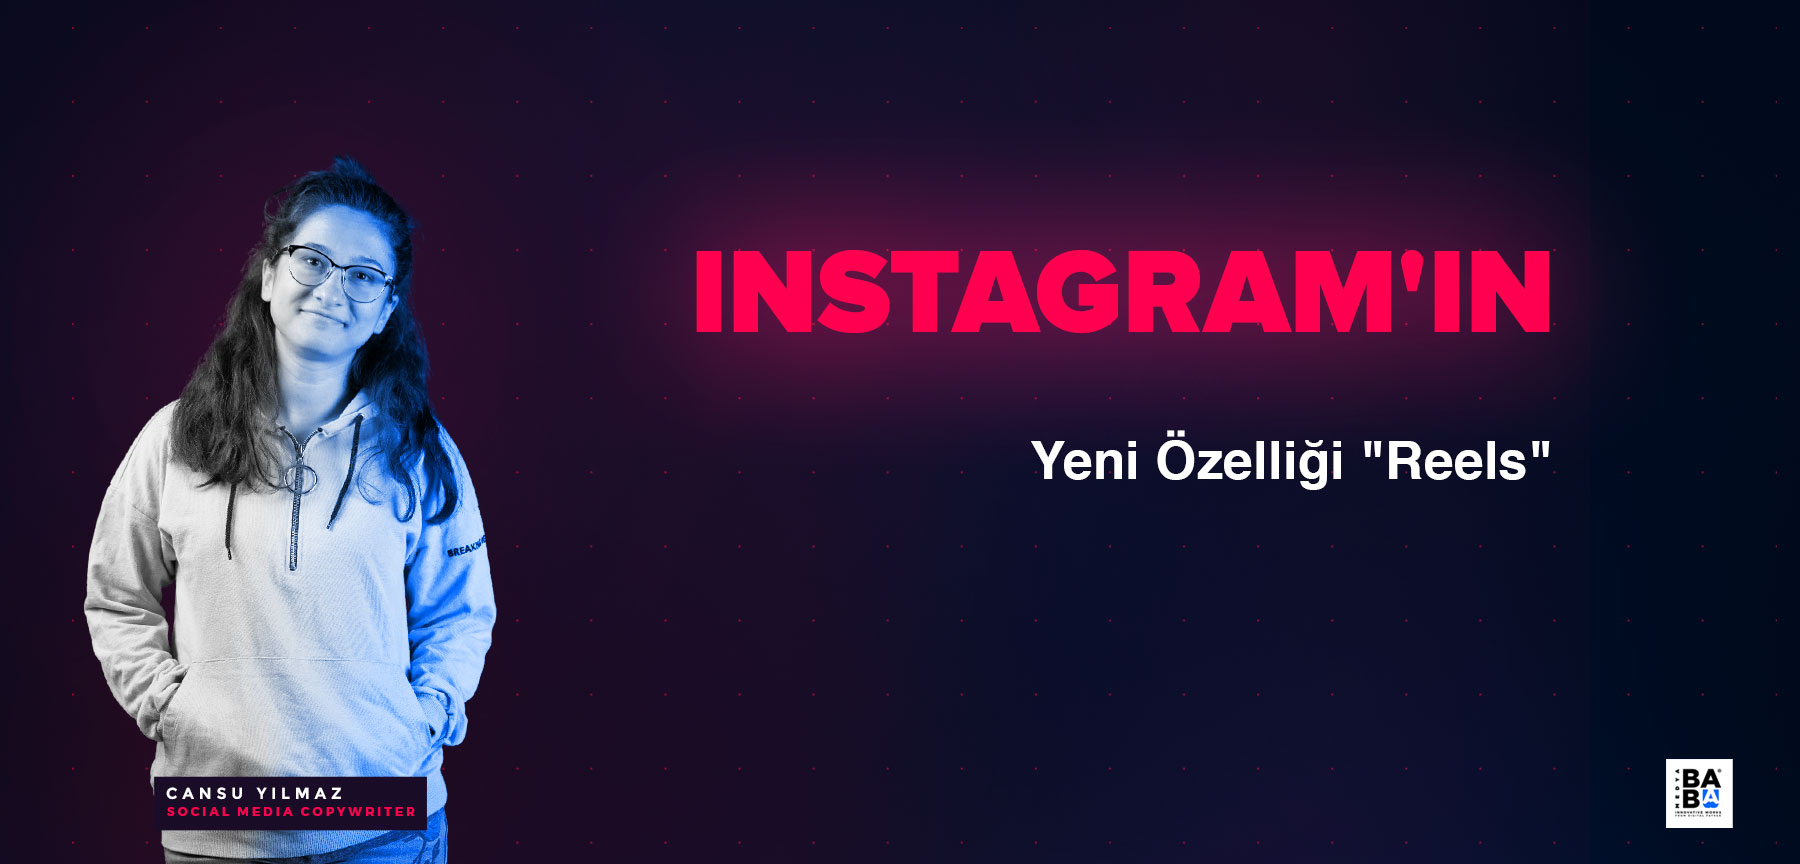 Instagram'ın Yeni Özelliği "Reels"